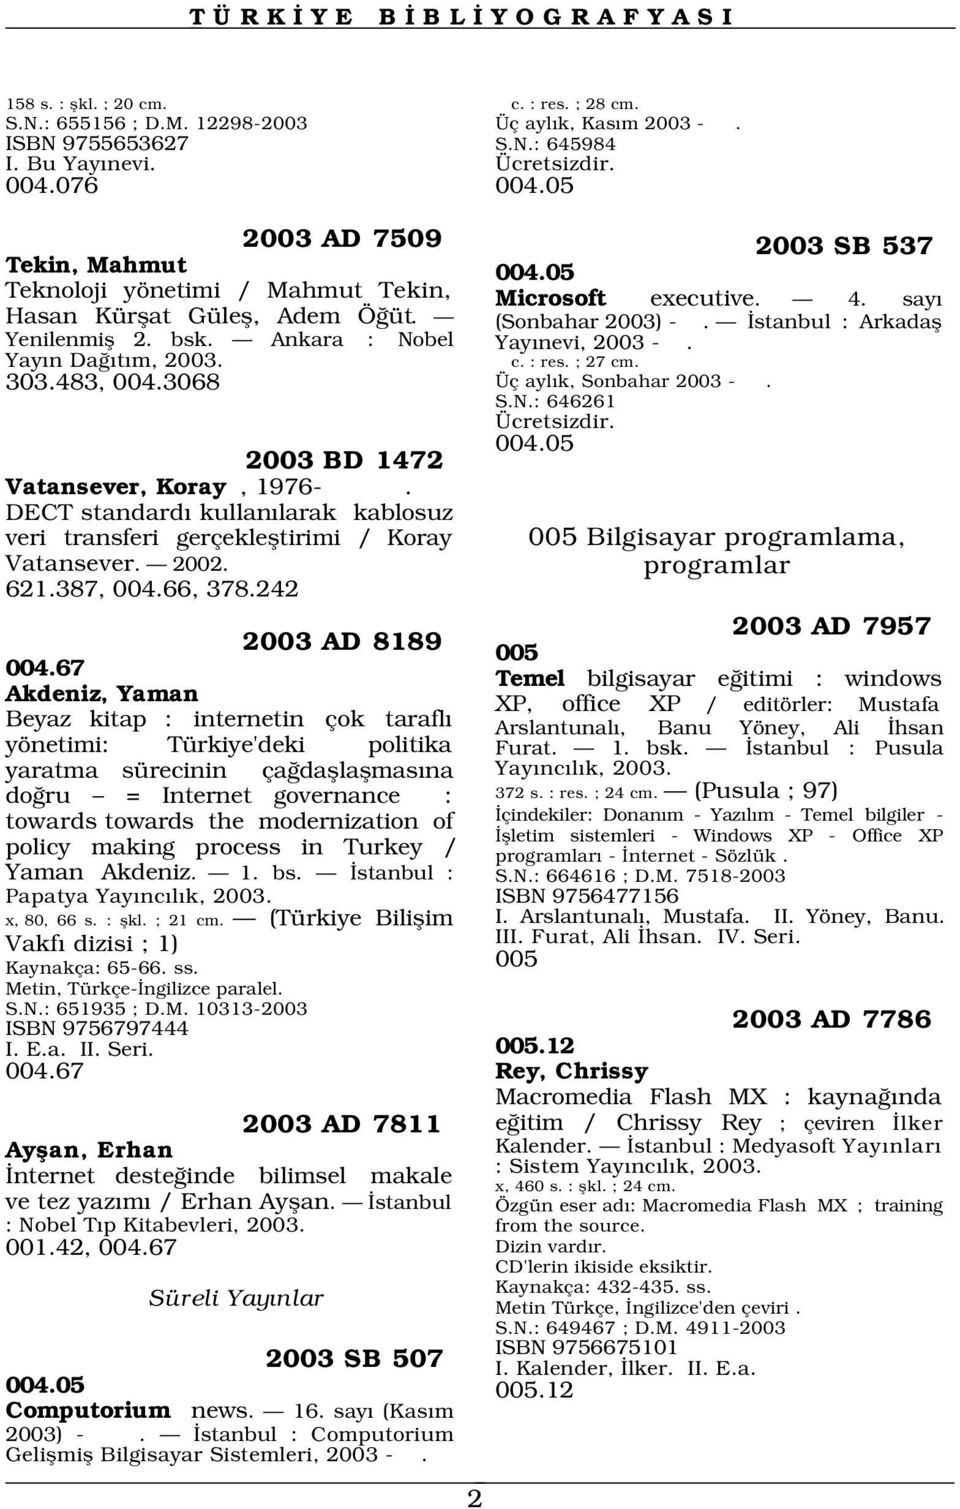 (Sonbahar 2003) - Yay nevi, 2003 -. c. : res. ; 27 cm. 303.483, 004.3068 Üç ayl k, Sonbahar 2003 -. S.N.: 646261 Ücretsizdir. 2003 BD 1472 004.05 Vatansever, Koray, 1976-.